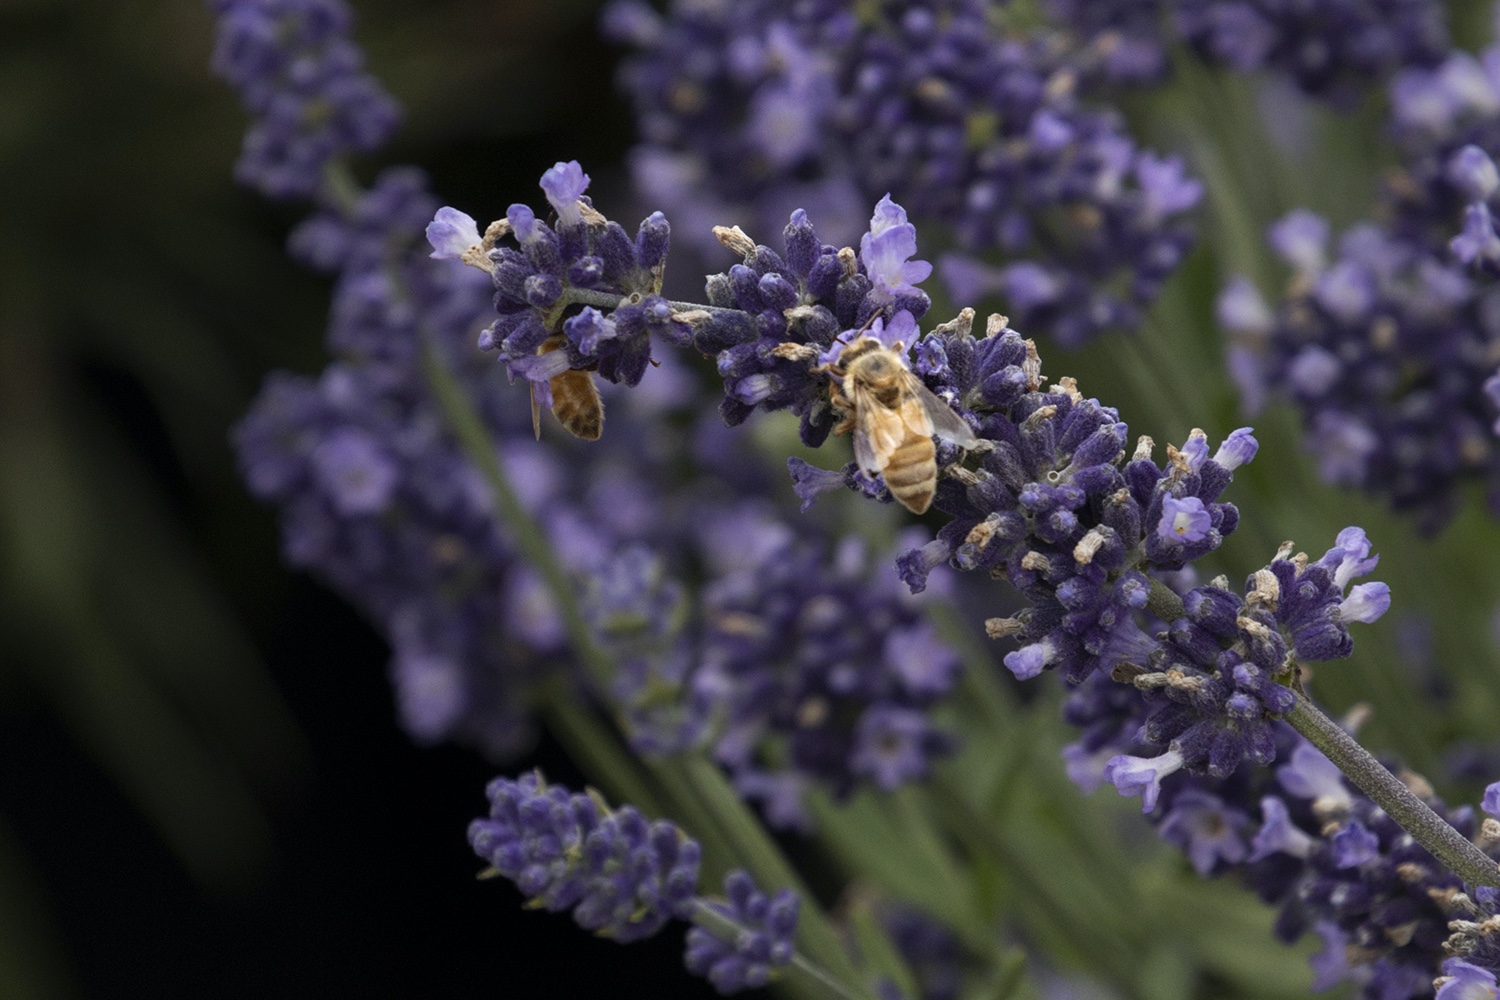 Honeybees on lavender flowers